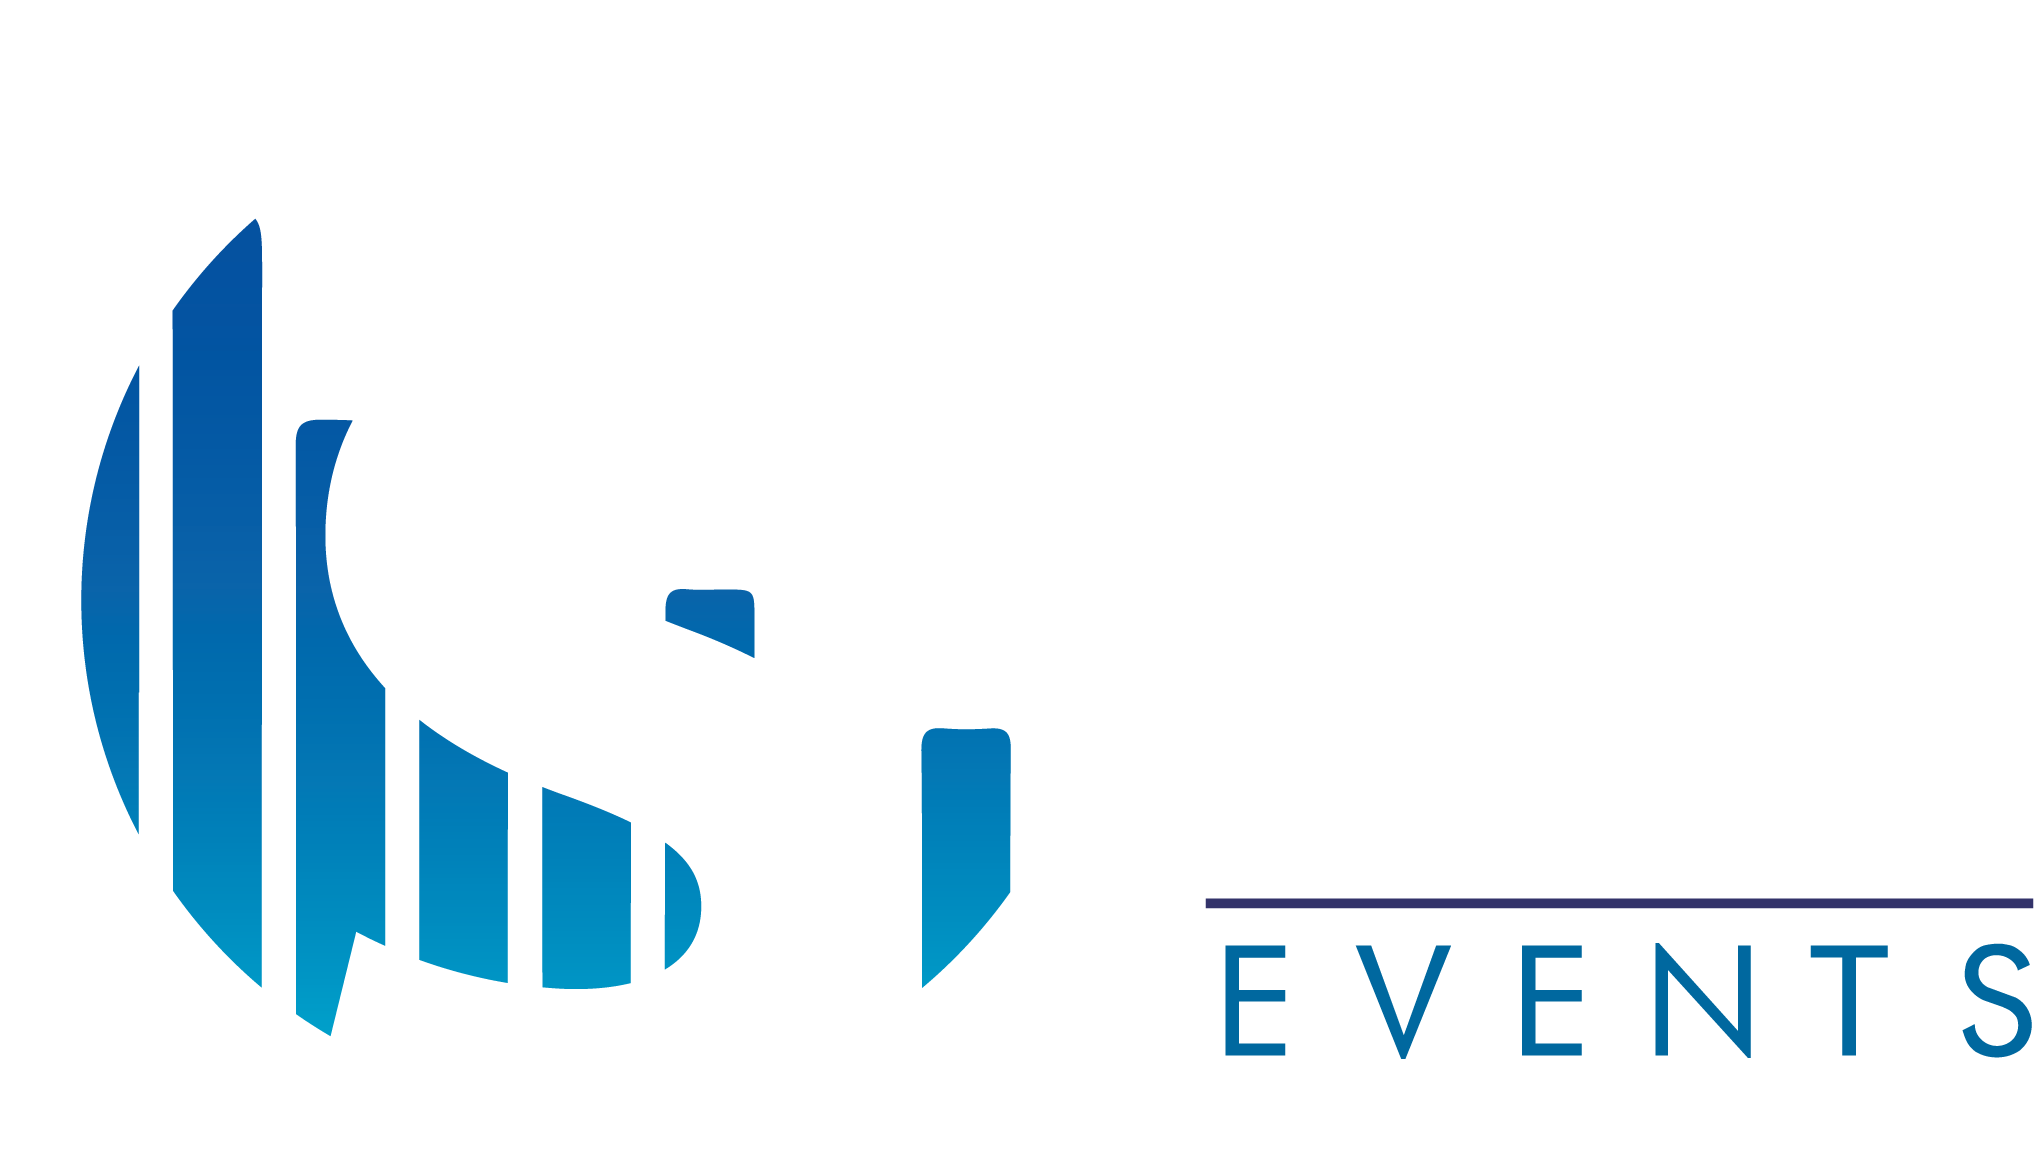 logo S'torm events